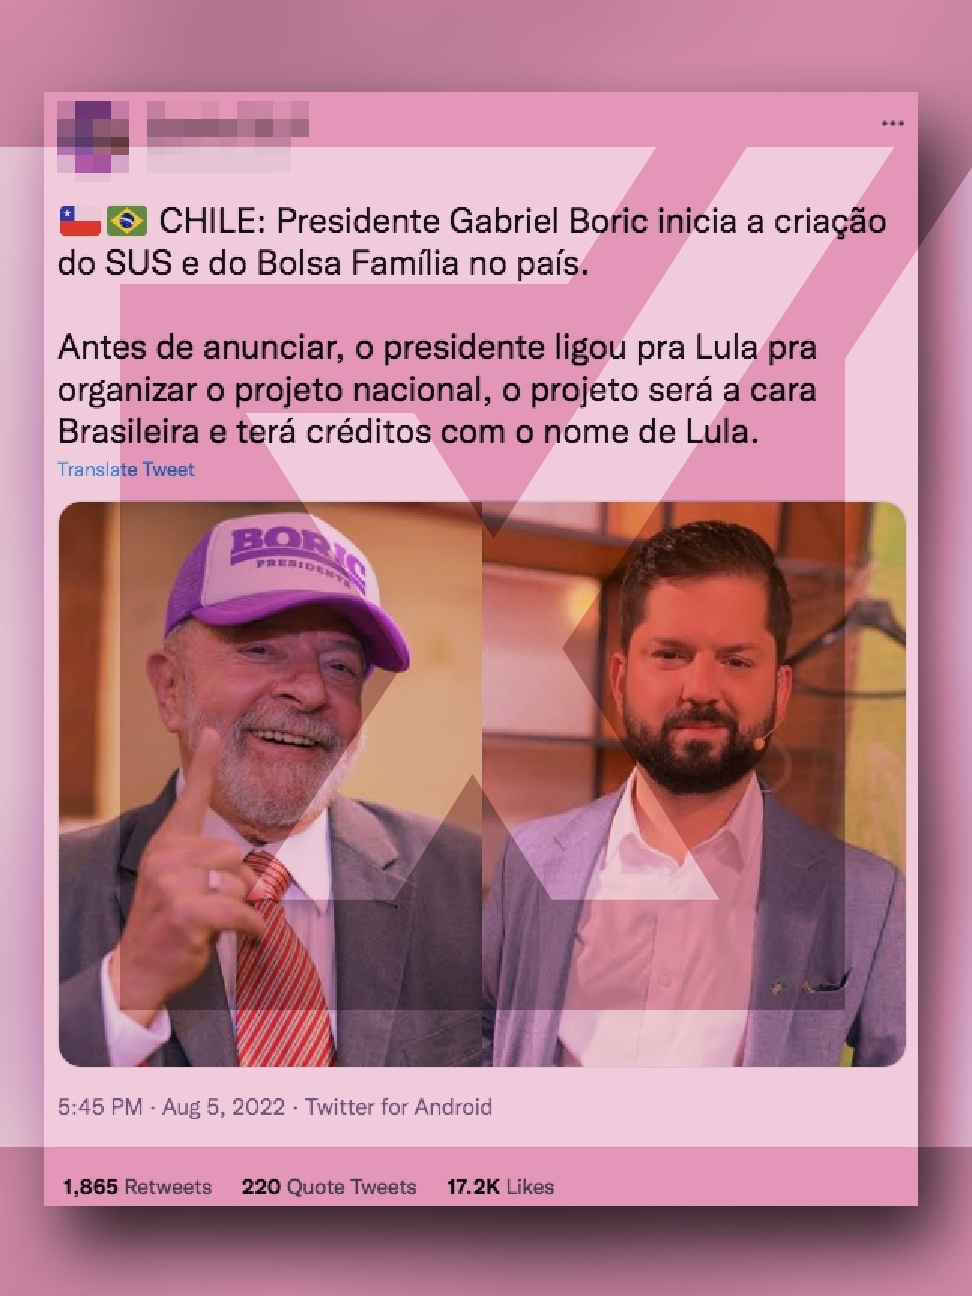 Não há evidência de que presidente do Chile tenha projeto inspirado em Lula  - Politica - Estado de Minas